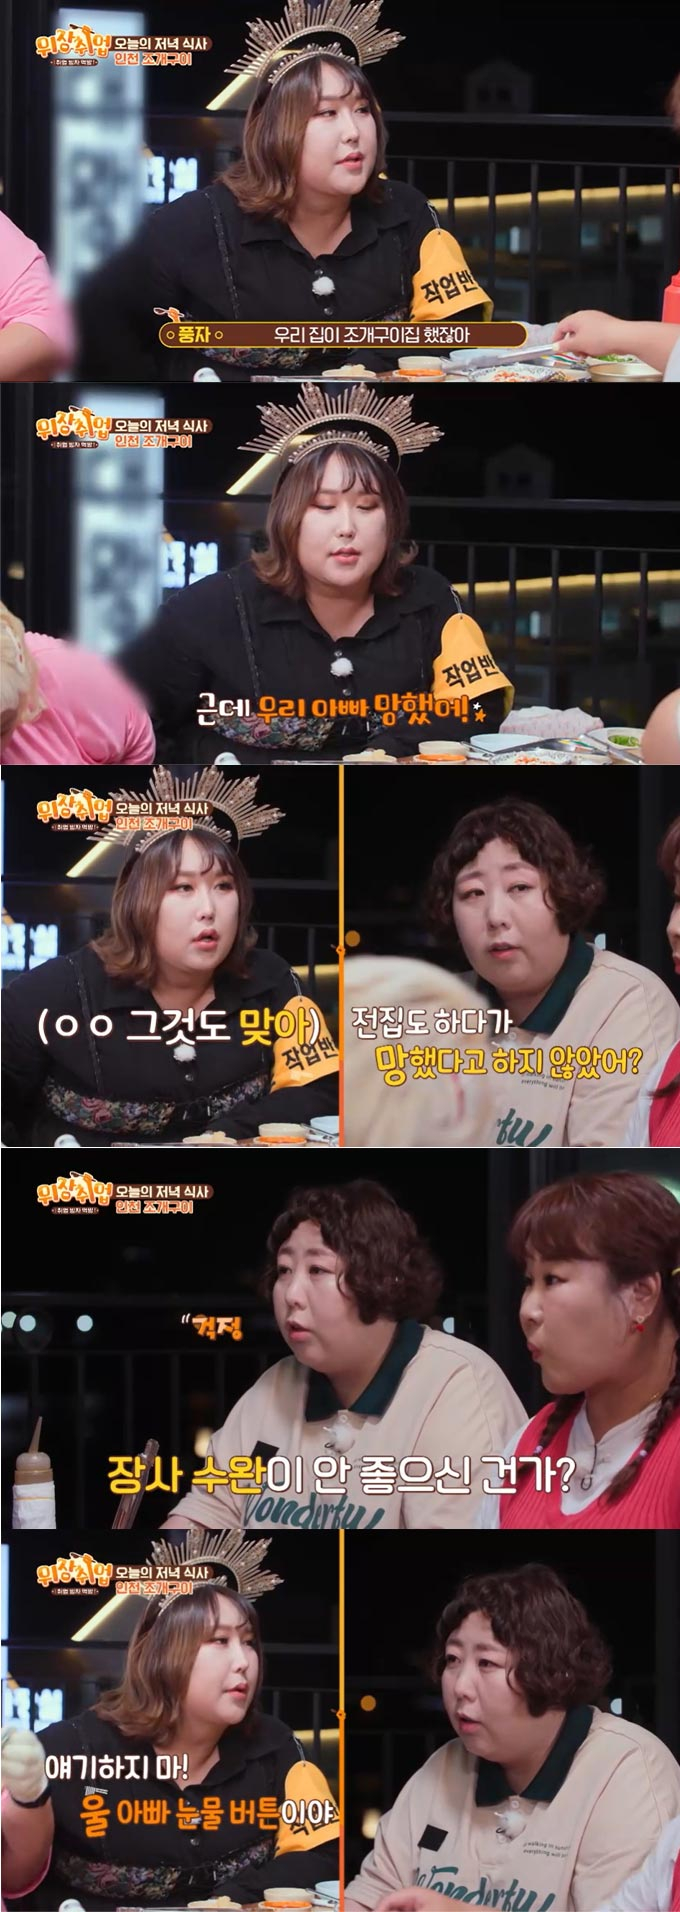 트랜스젠더 방송인 풍자./사진=KBS Joy·채널S '위장취업' 방송 화면